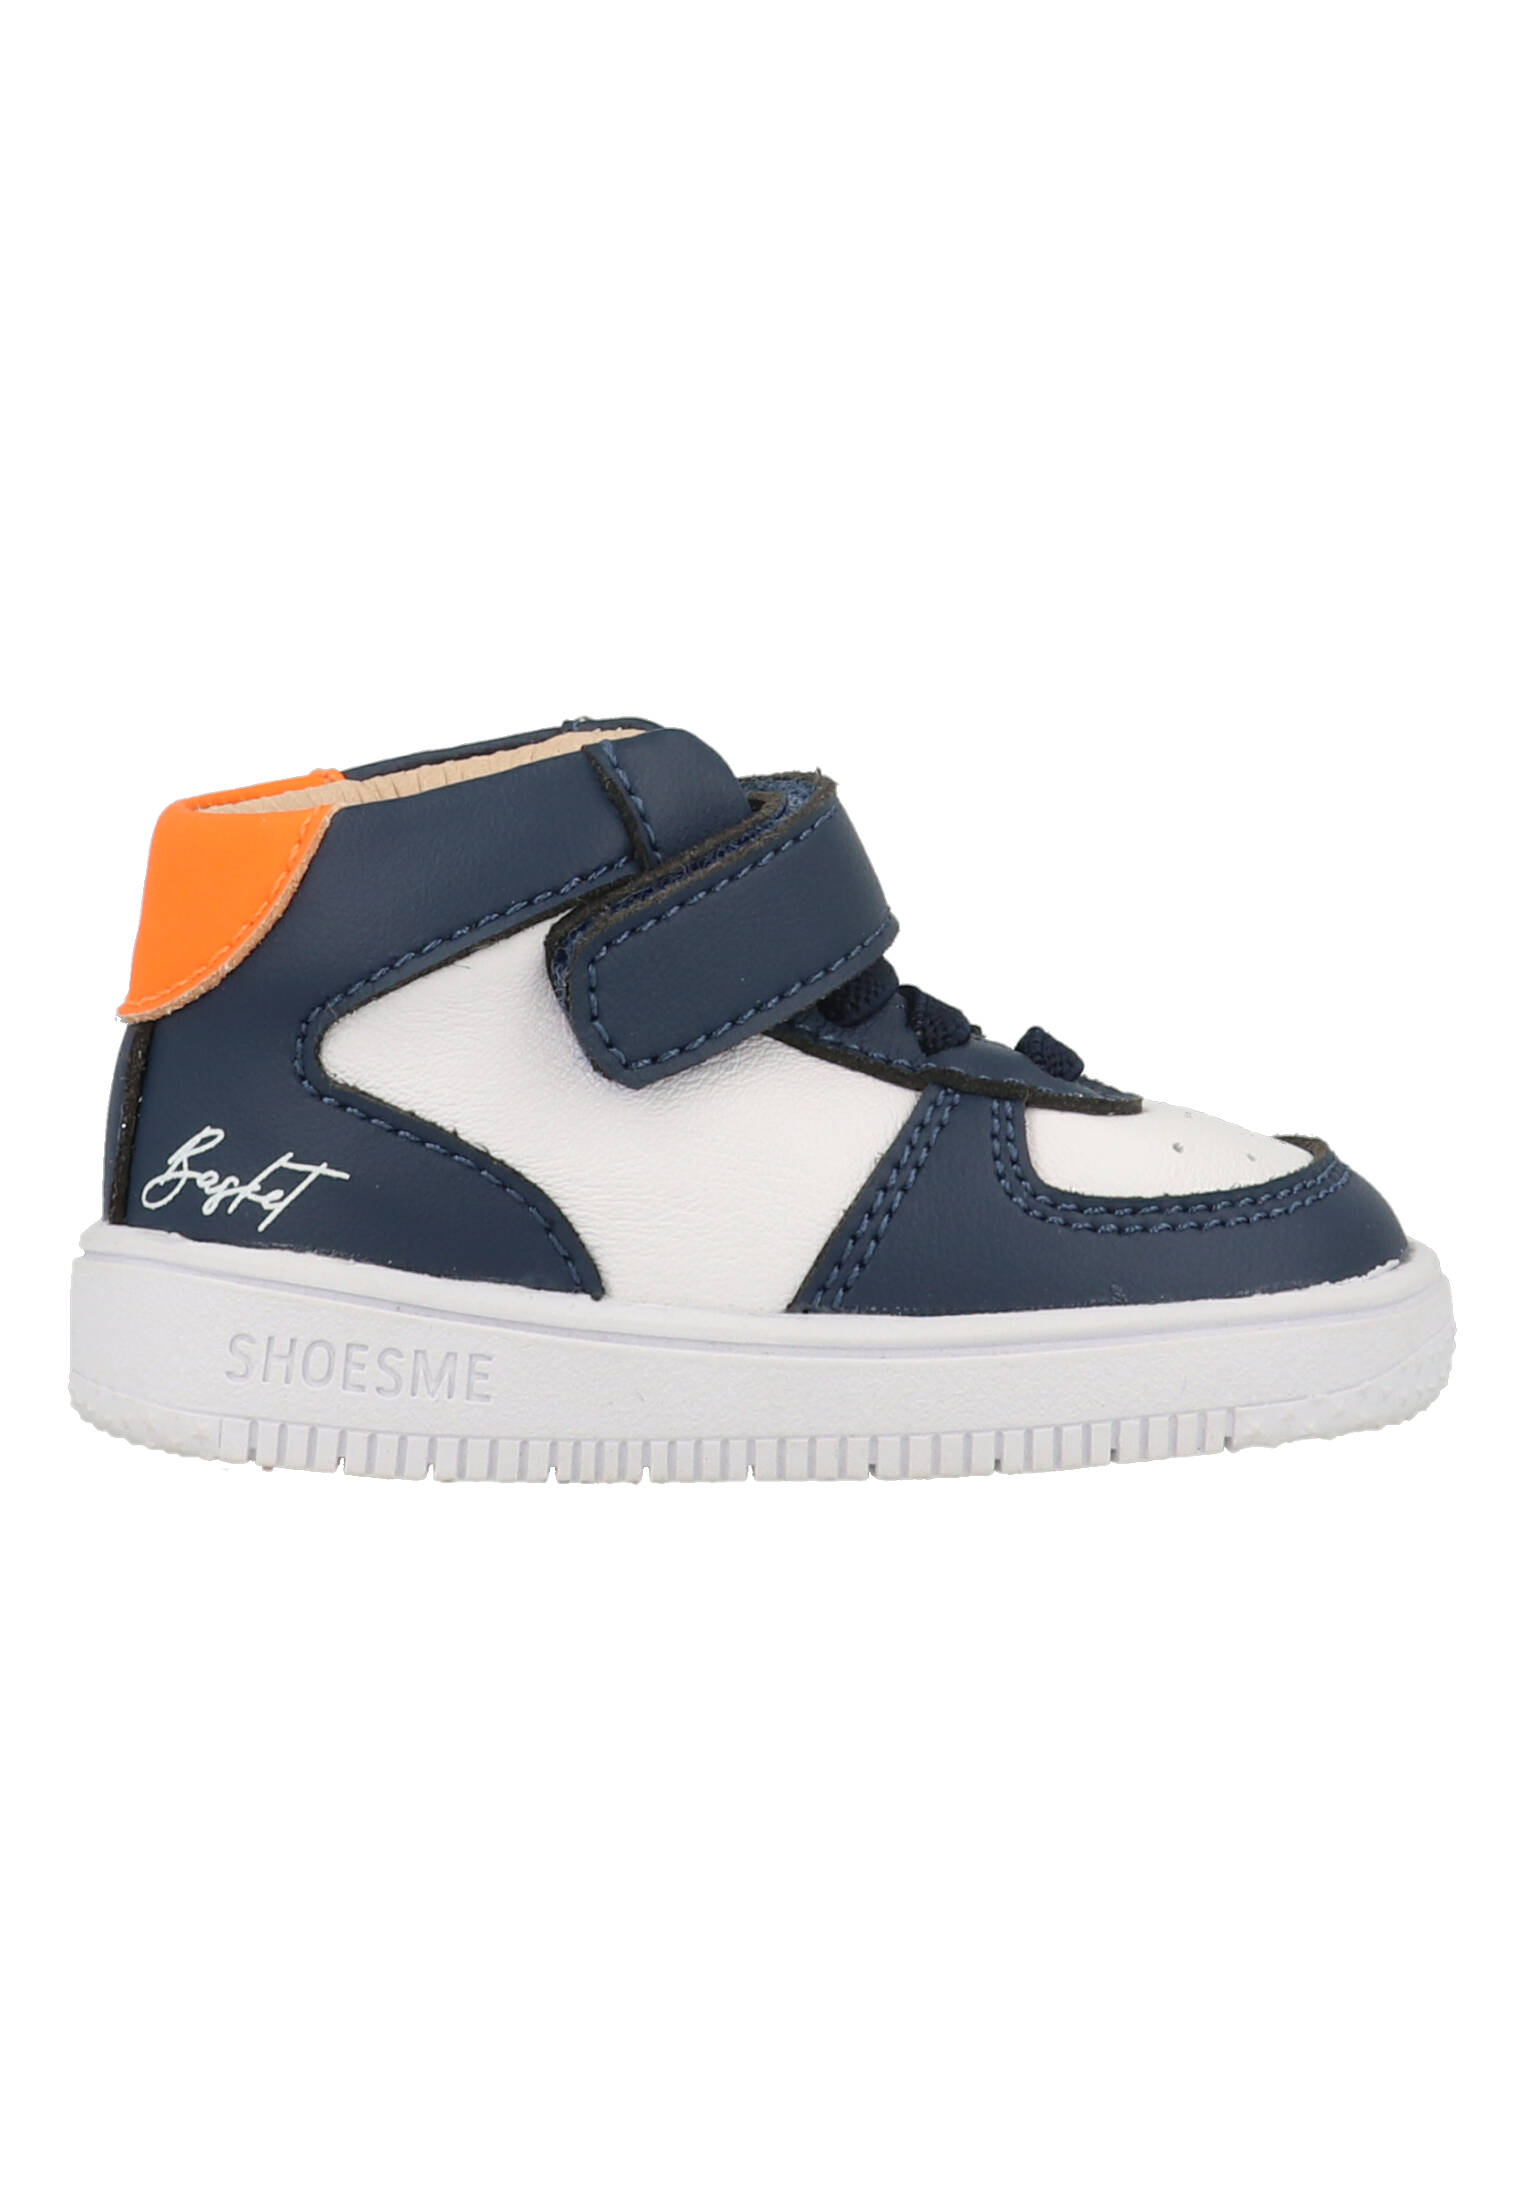 Shoesme baby sneaker - Blauw wit - Maat 20